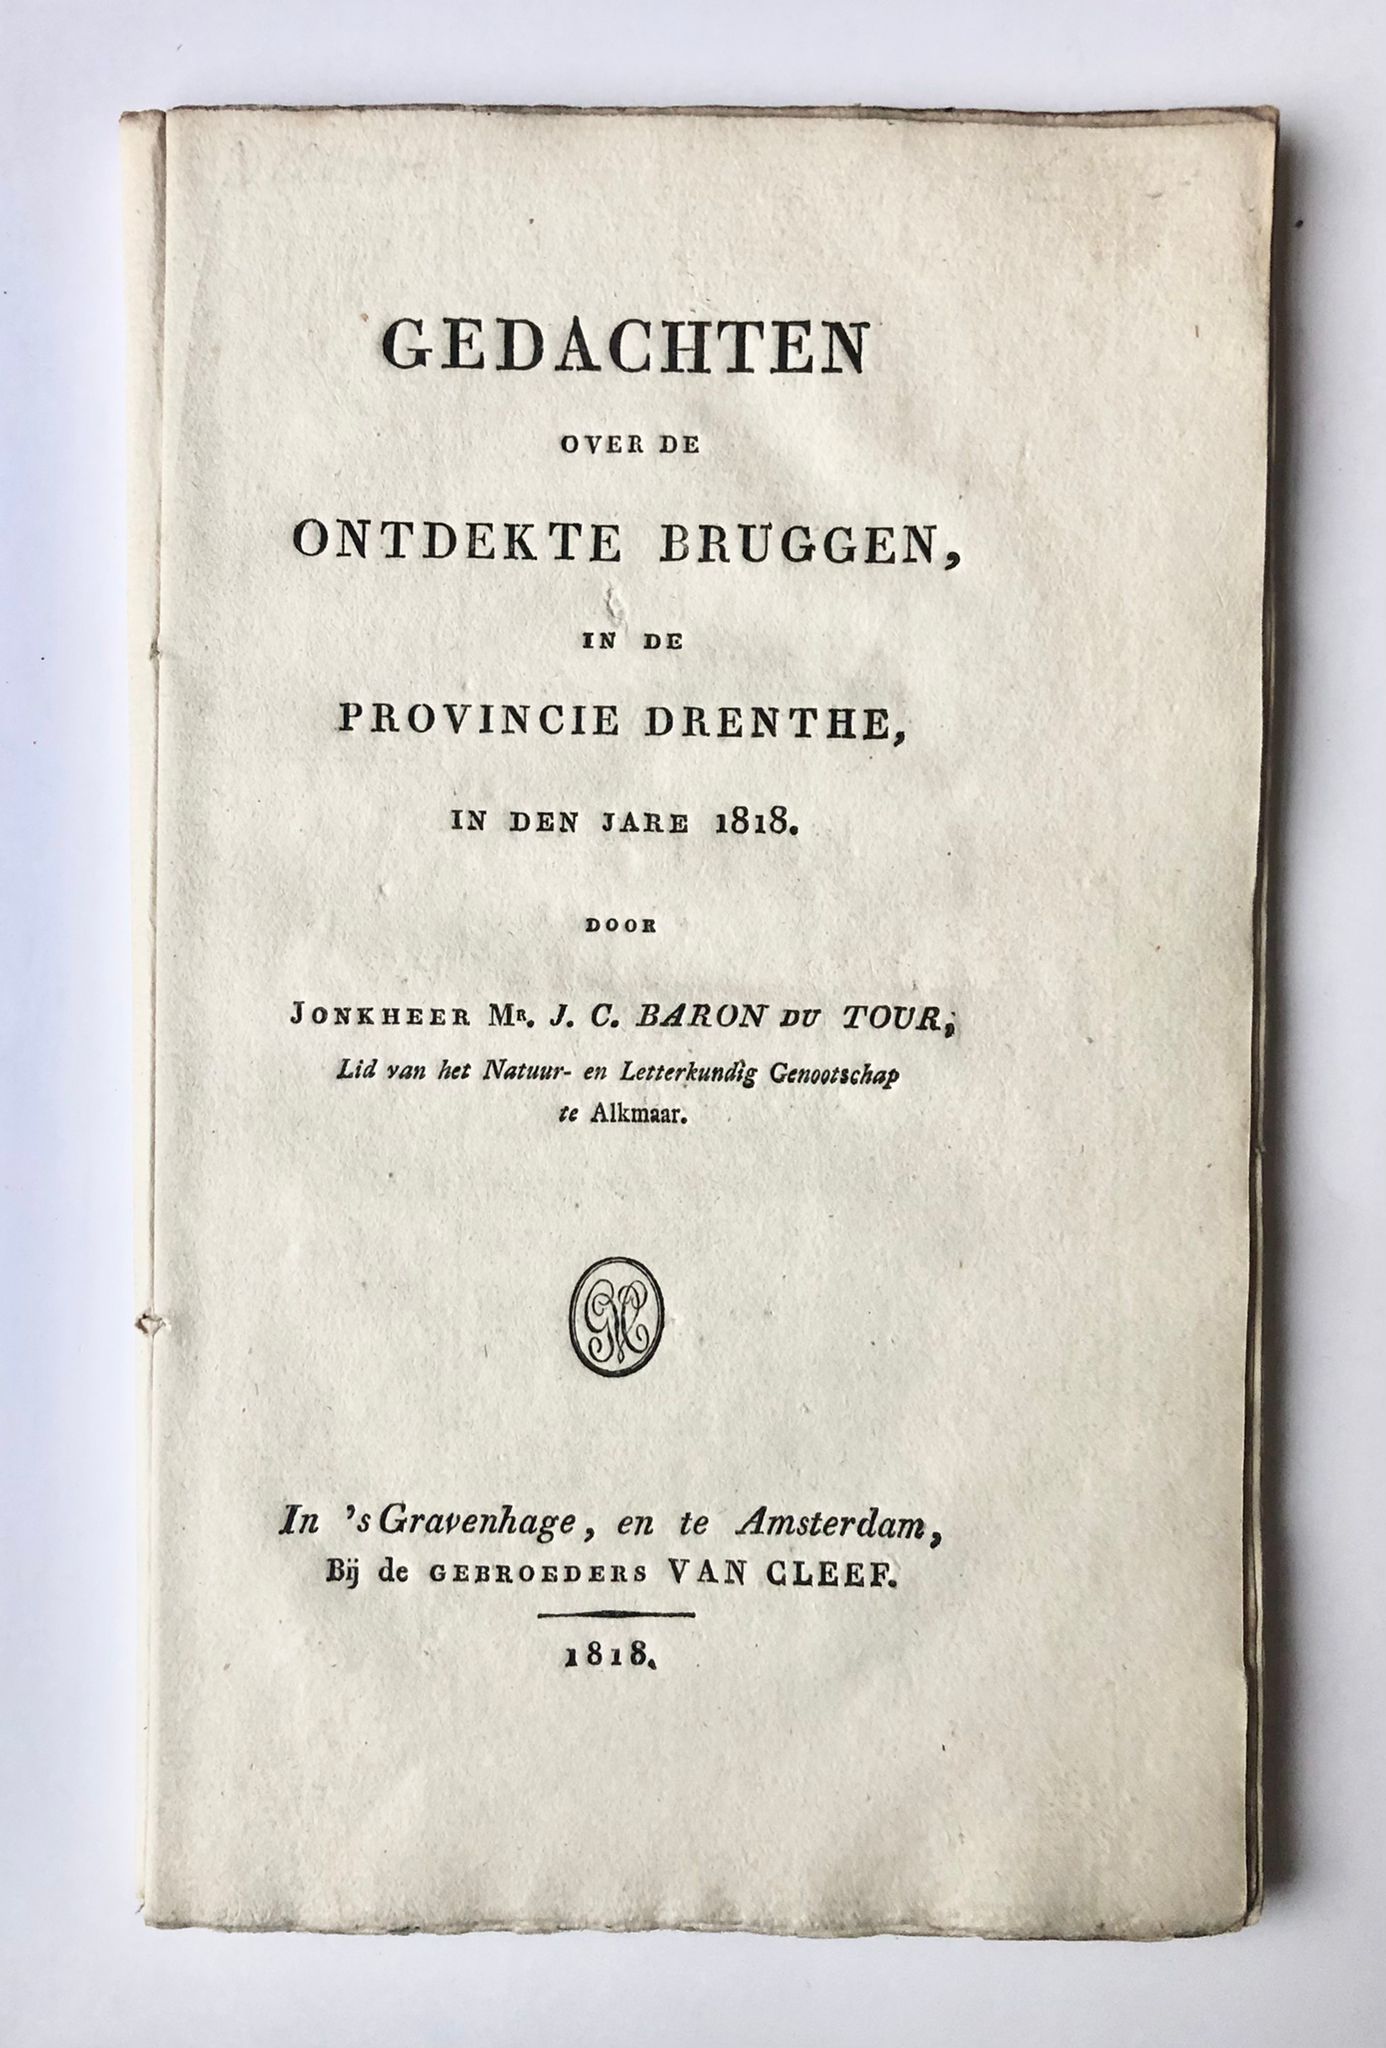 [Drenthe] Gedachten over de ontdekte bruggen, in de Provincie Drenthe, in den jare 1818, Door Jonkheer Mr. J. C. Baron du Tour, Bij de Gebroeders Van Cleef, In ’s Gravenhage, en te Amsterdam, 1818, 36 pp.